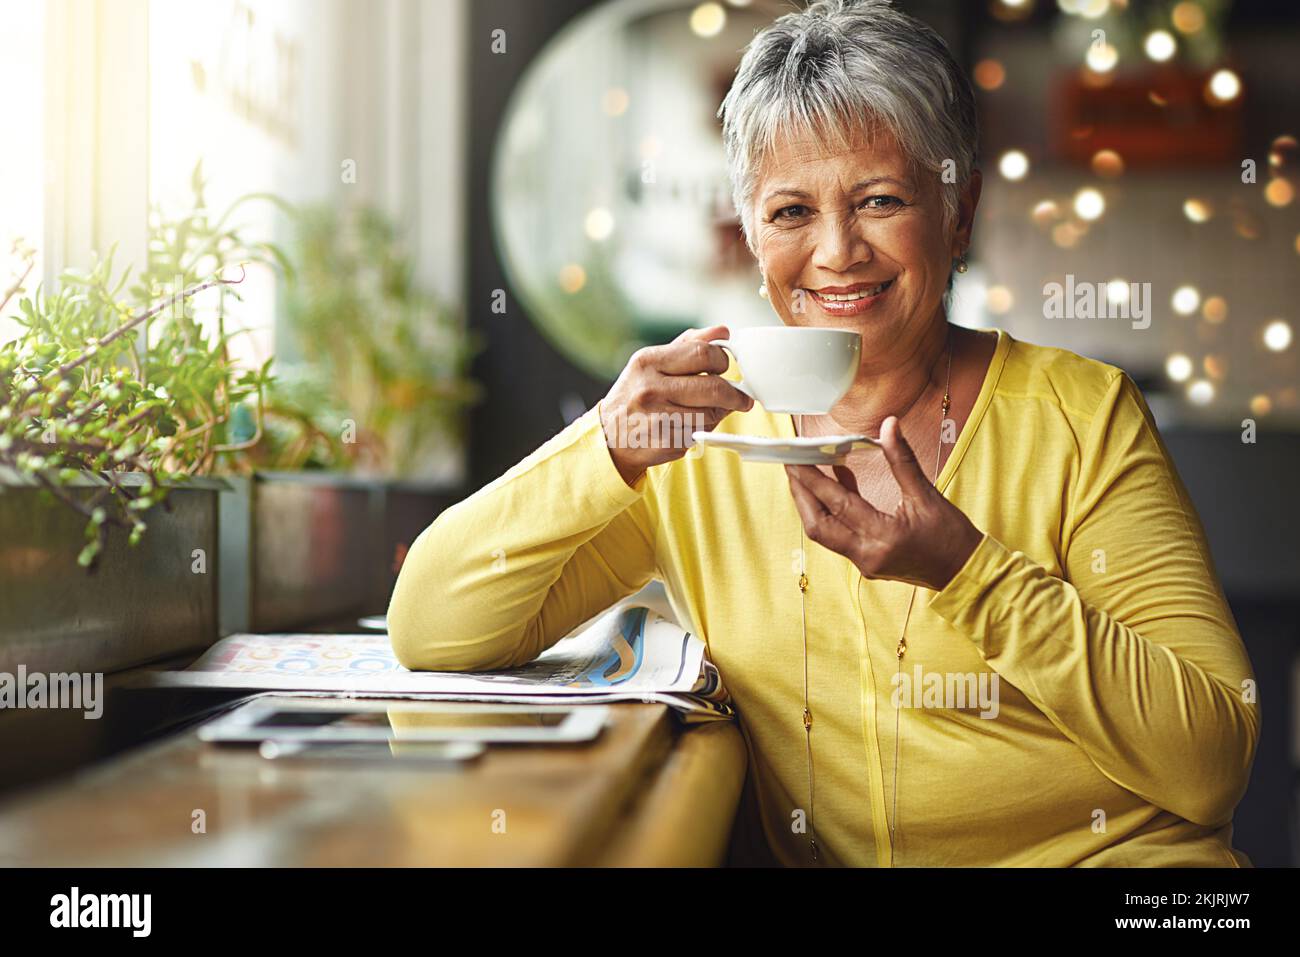 L'umore di oggi è sponsorizzato dal caffè. Ritratto di una donna matura che beve una bevanda calda in una caffetteria. Foto Stock